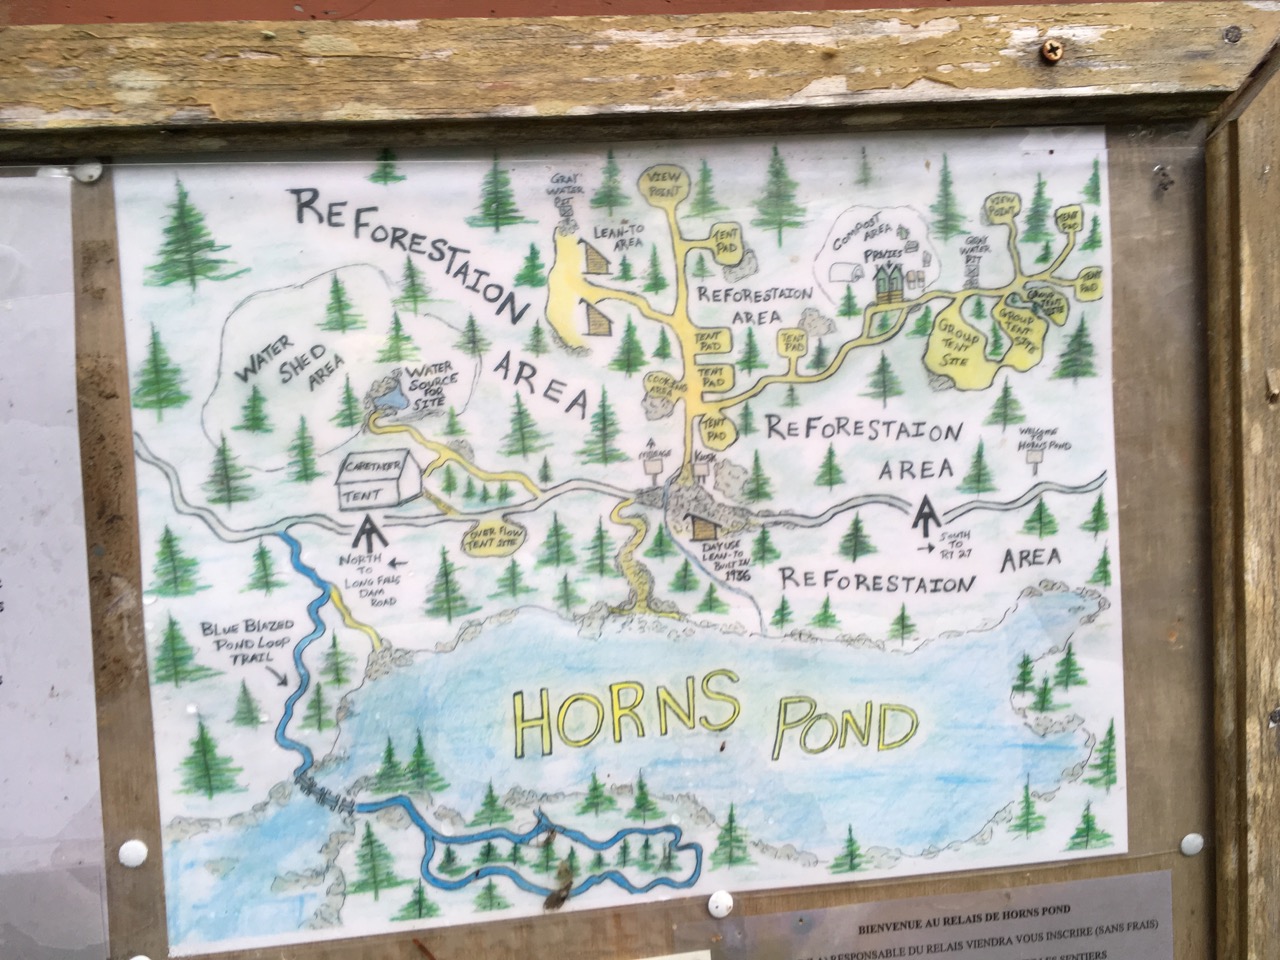 Horns pond site